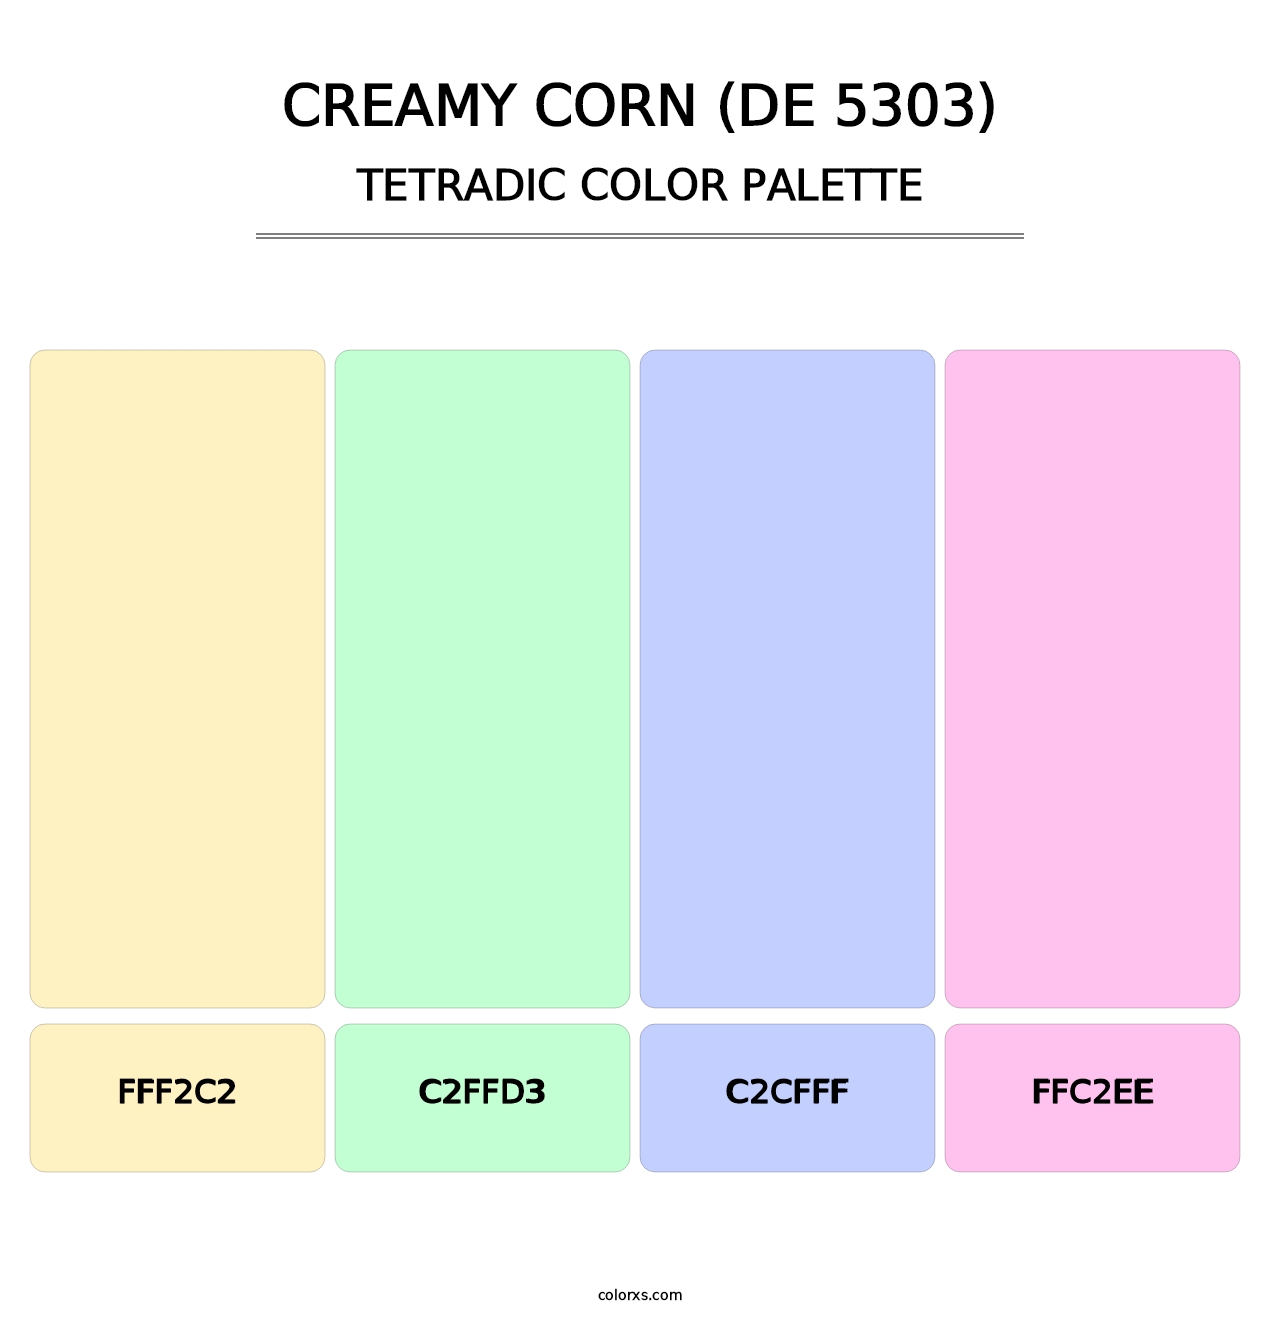 Creamy Corn (DE 5303) - Tetradic Color Palette